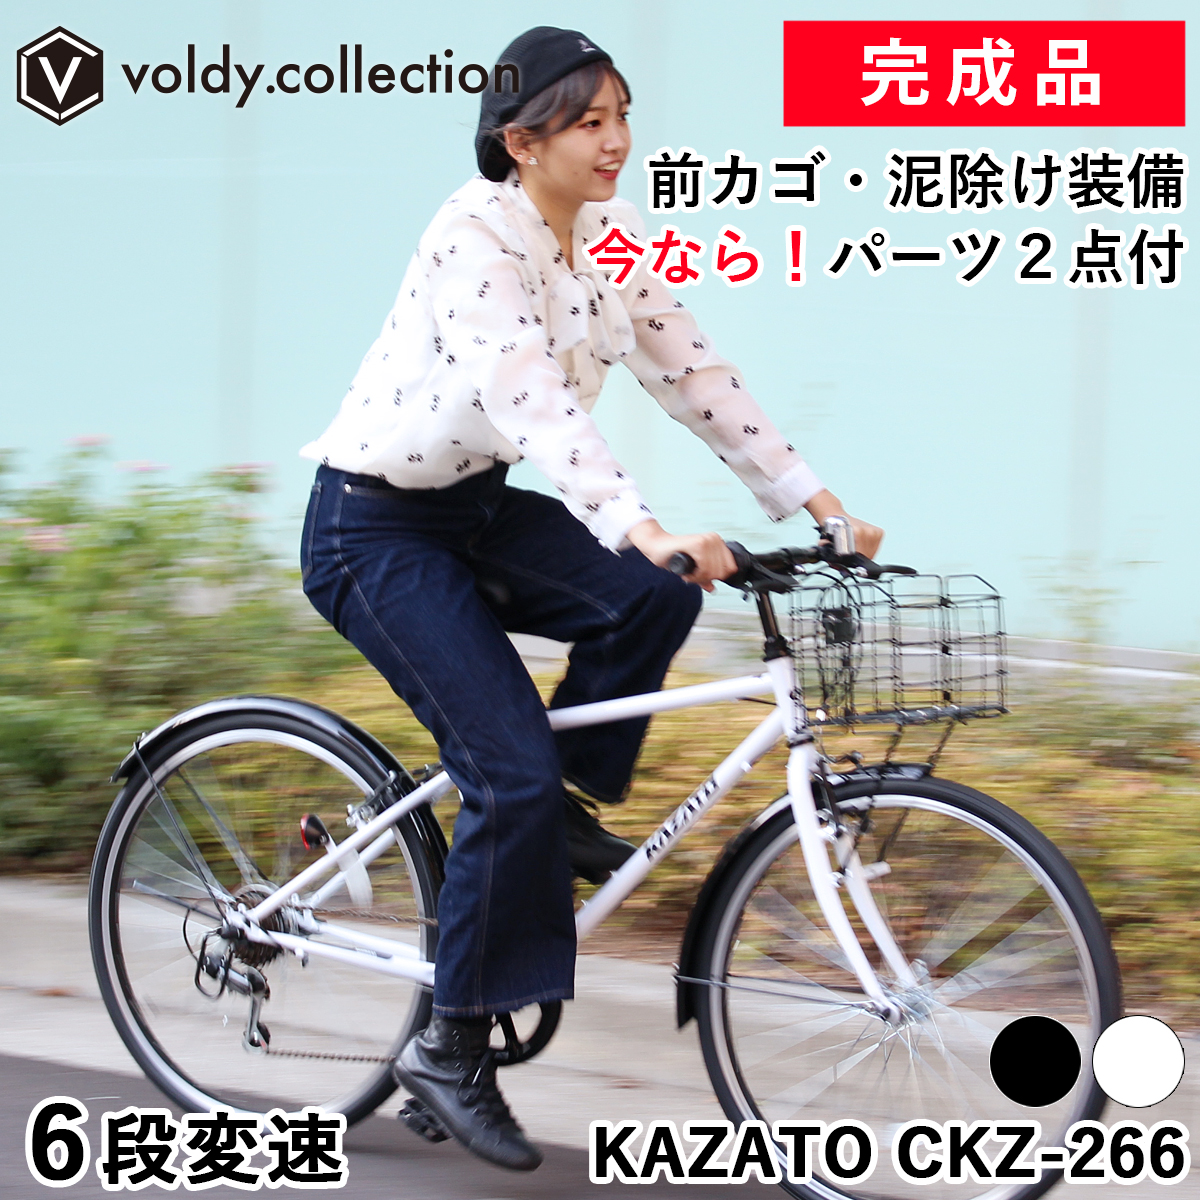 【楽天市場】【365日出荷対応店】クロスバイク カゴ付き 自転車 26 